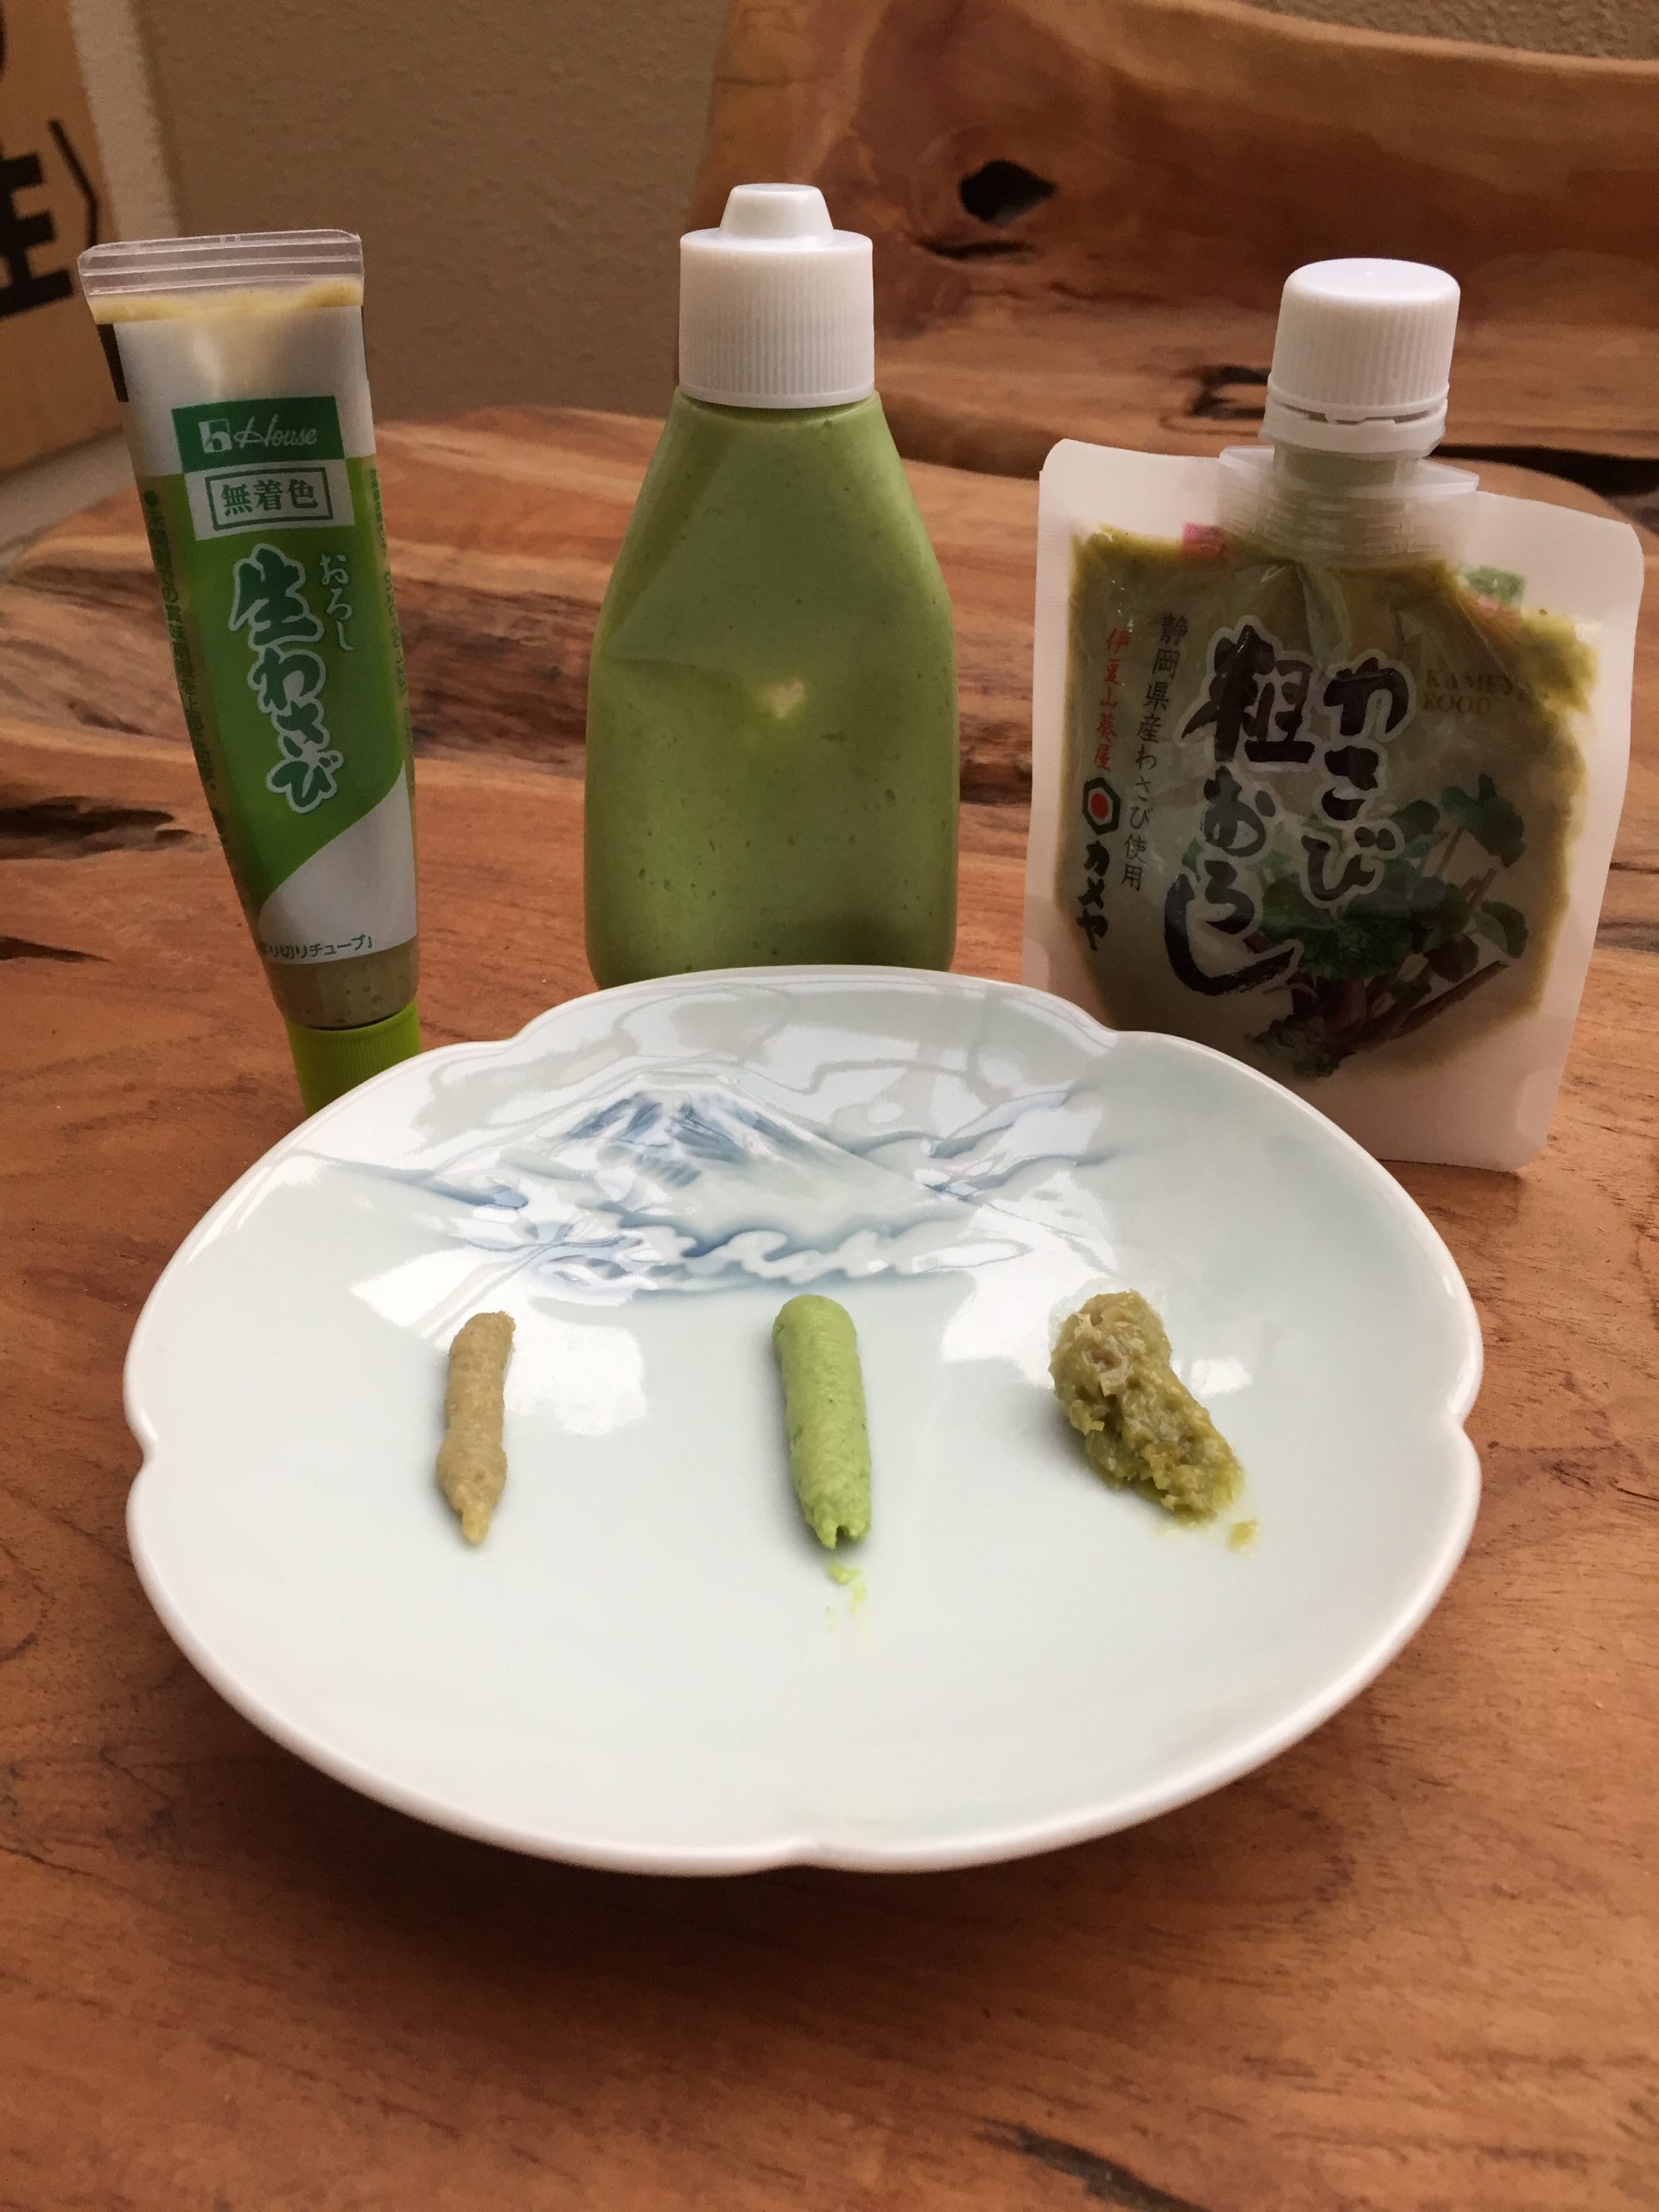 Perbandingan wasabi asli dan palsu. Wasabi yang ada di kiri adalah wasabi palsu (tokyocreattive.com)